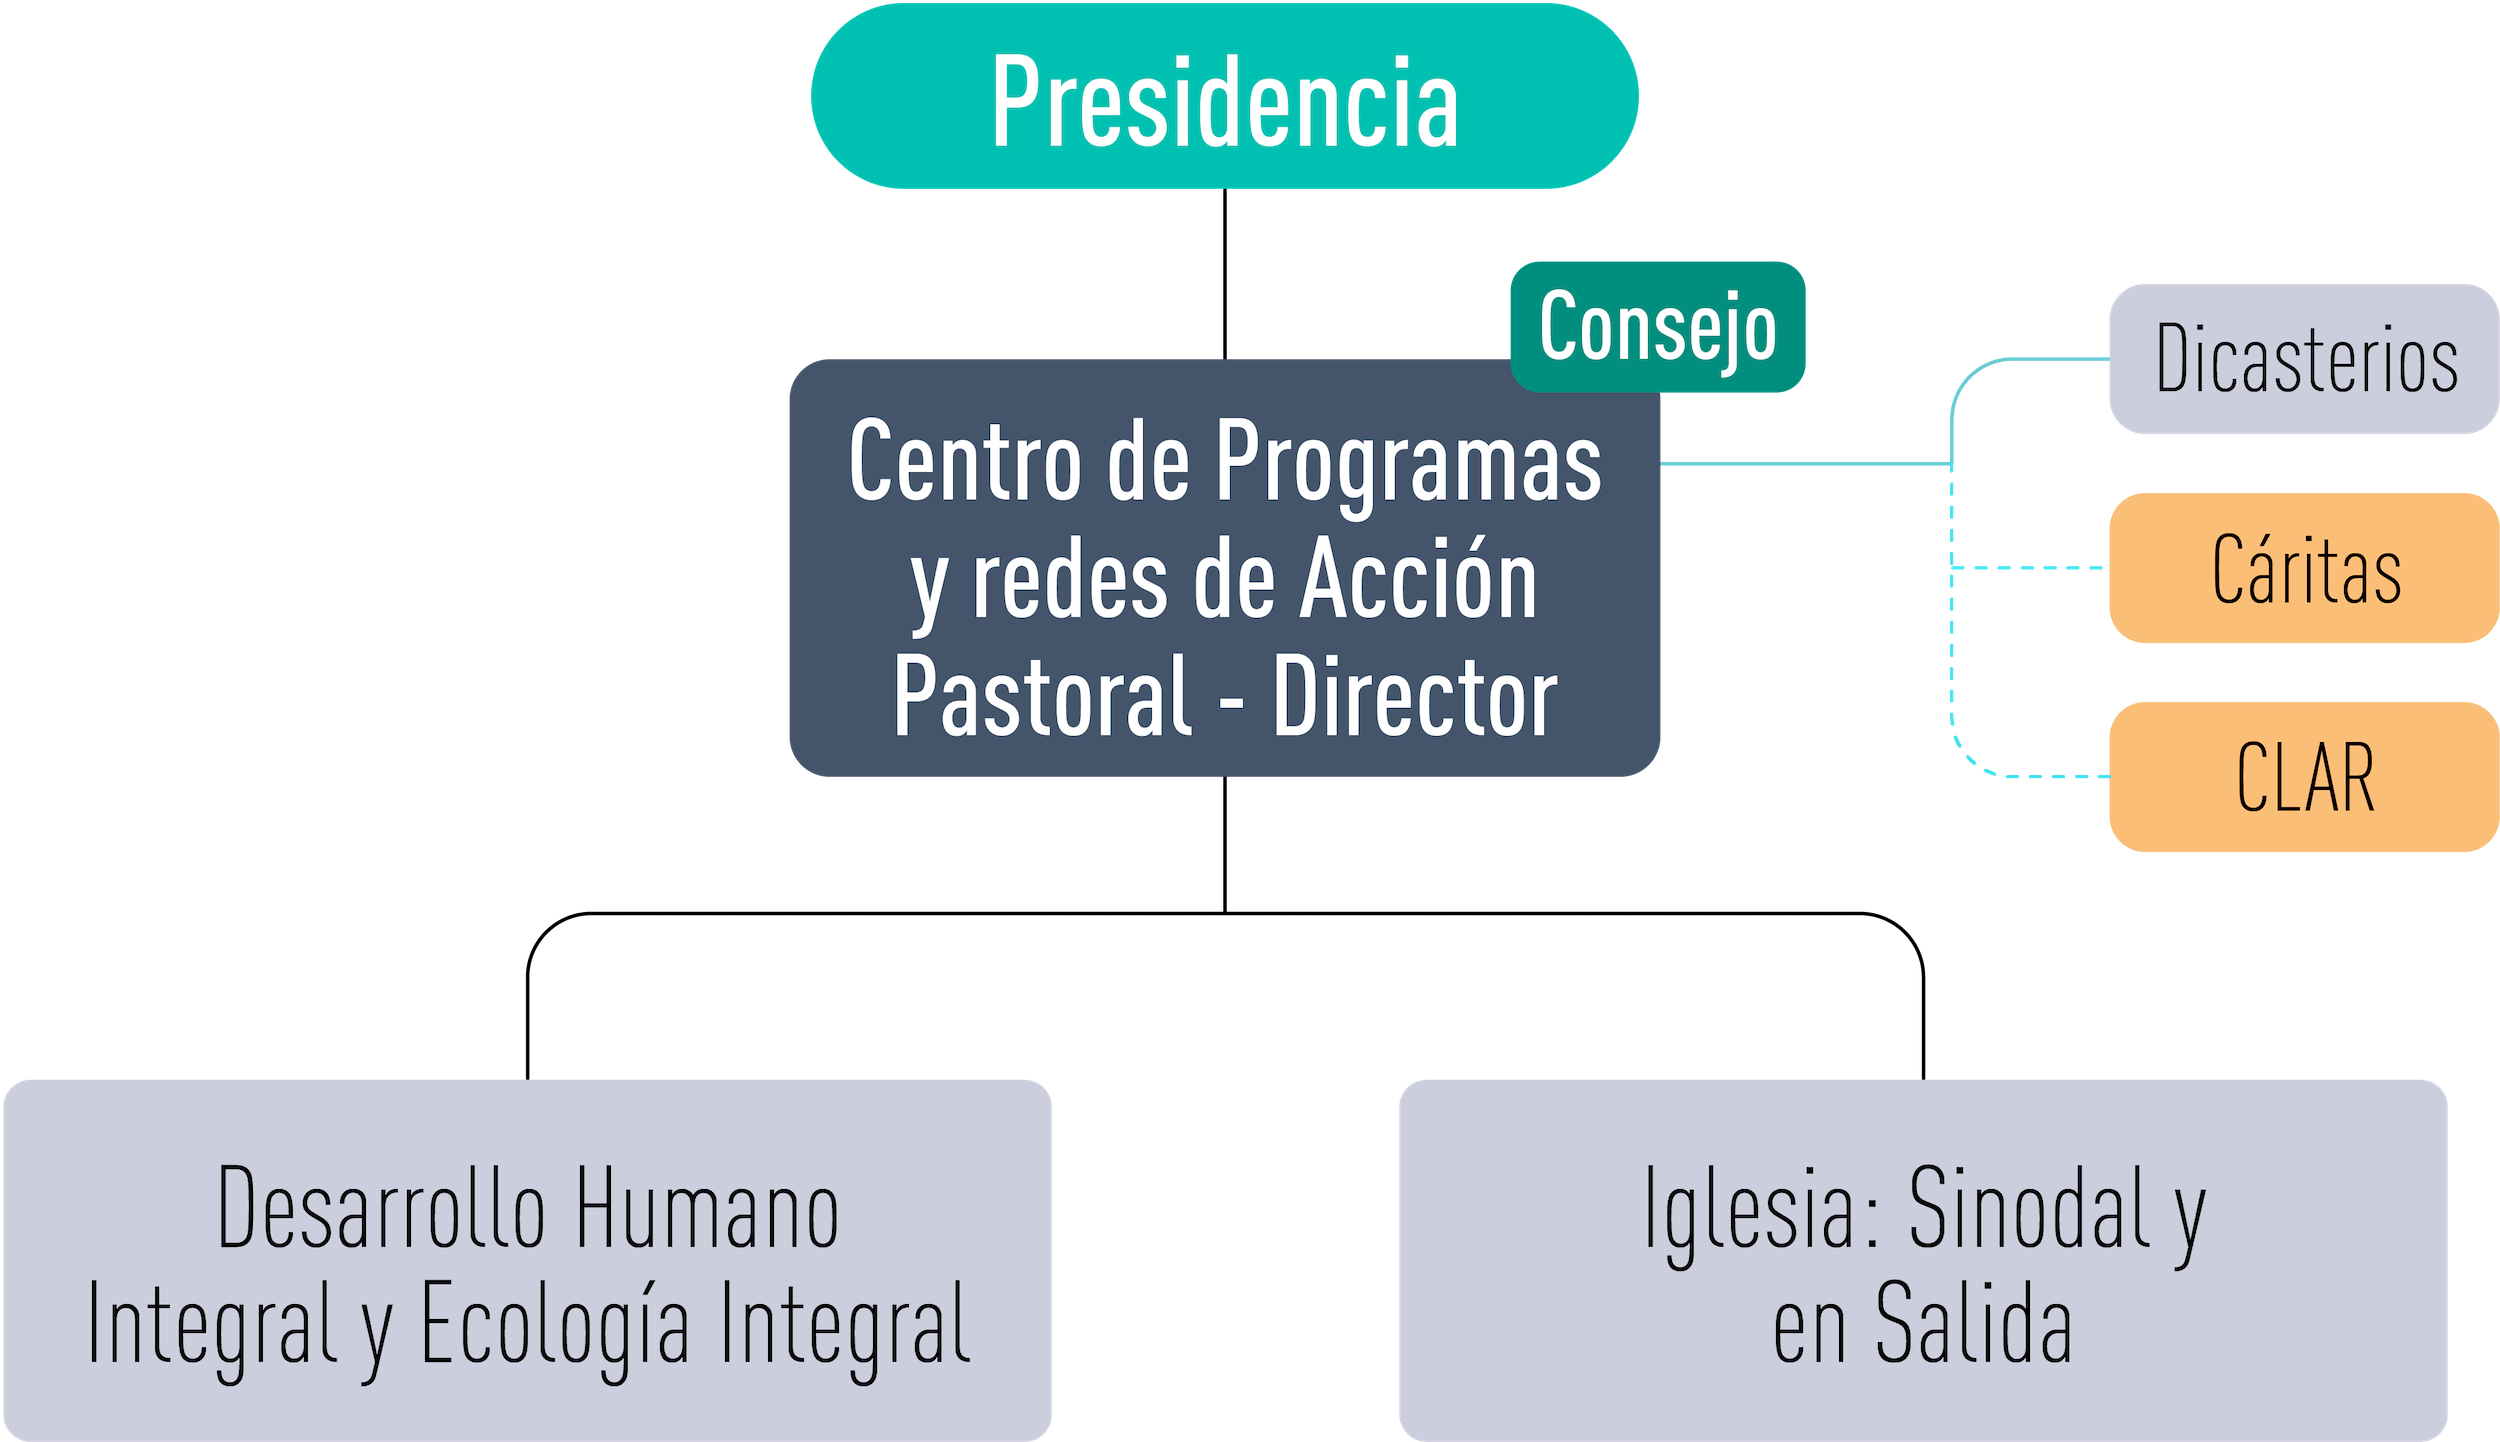 Centro de Programas y Redes de Acción Pastoral